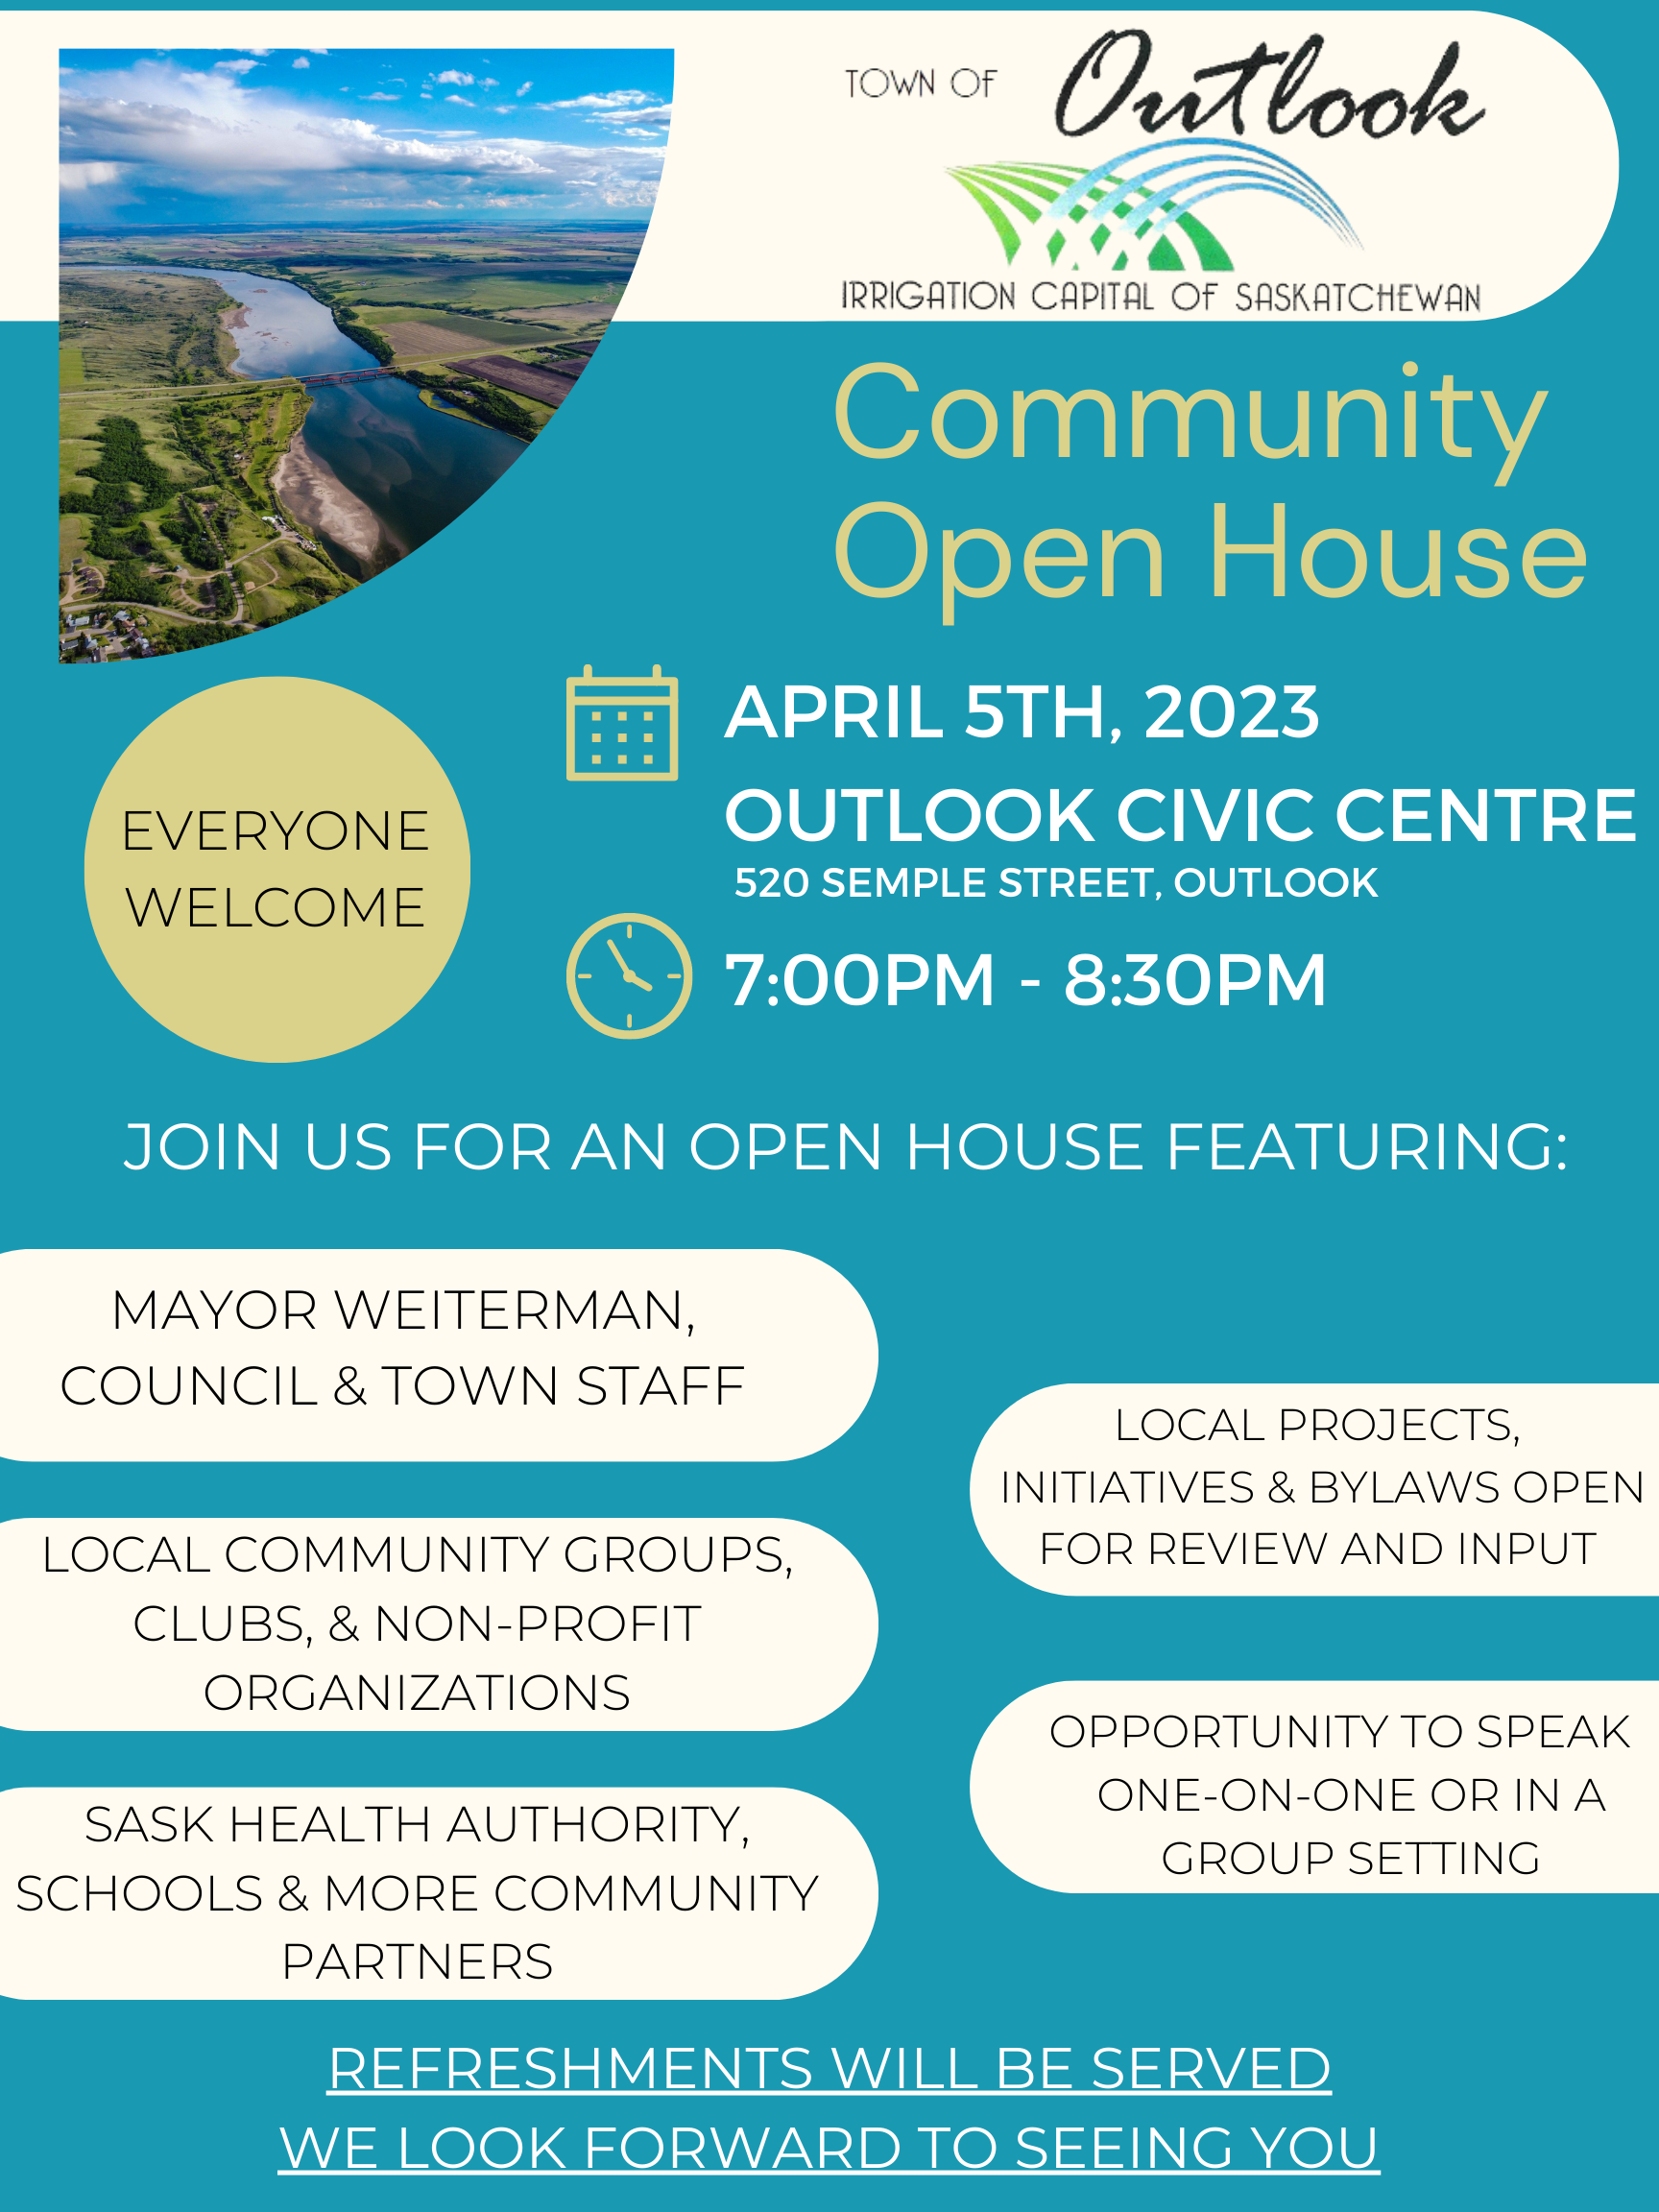 Community Open House - April 5, 2023